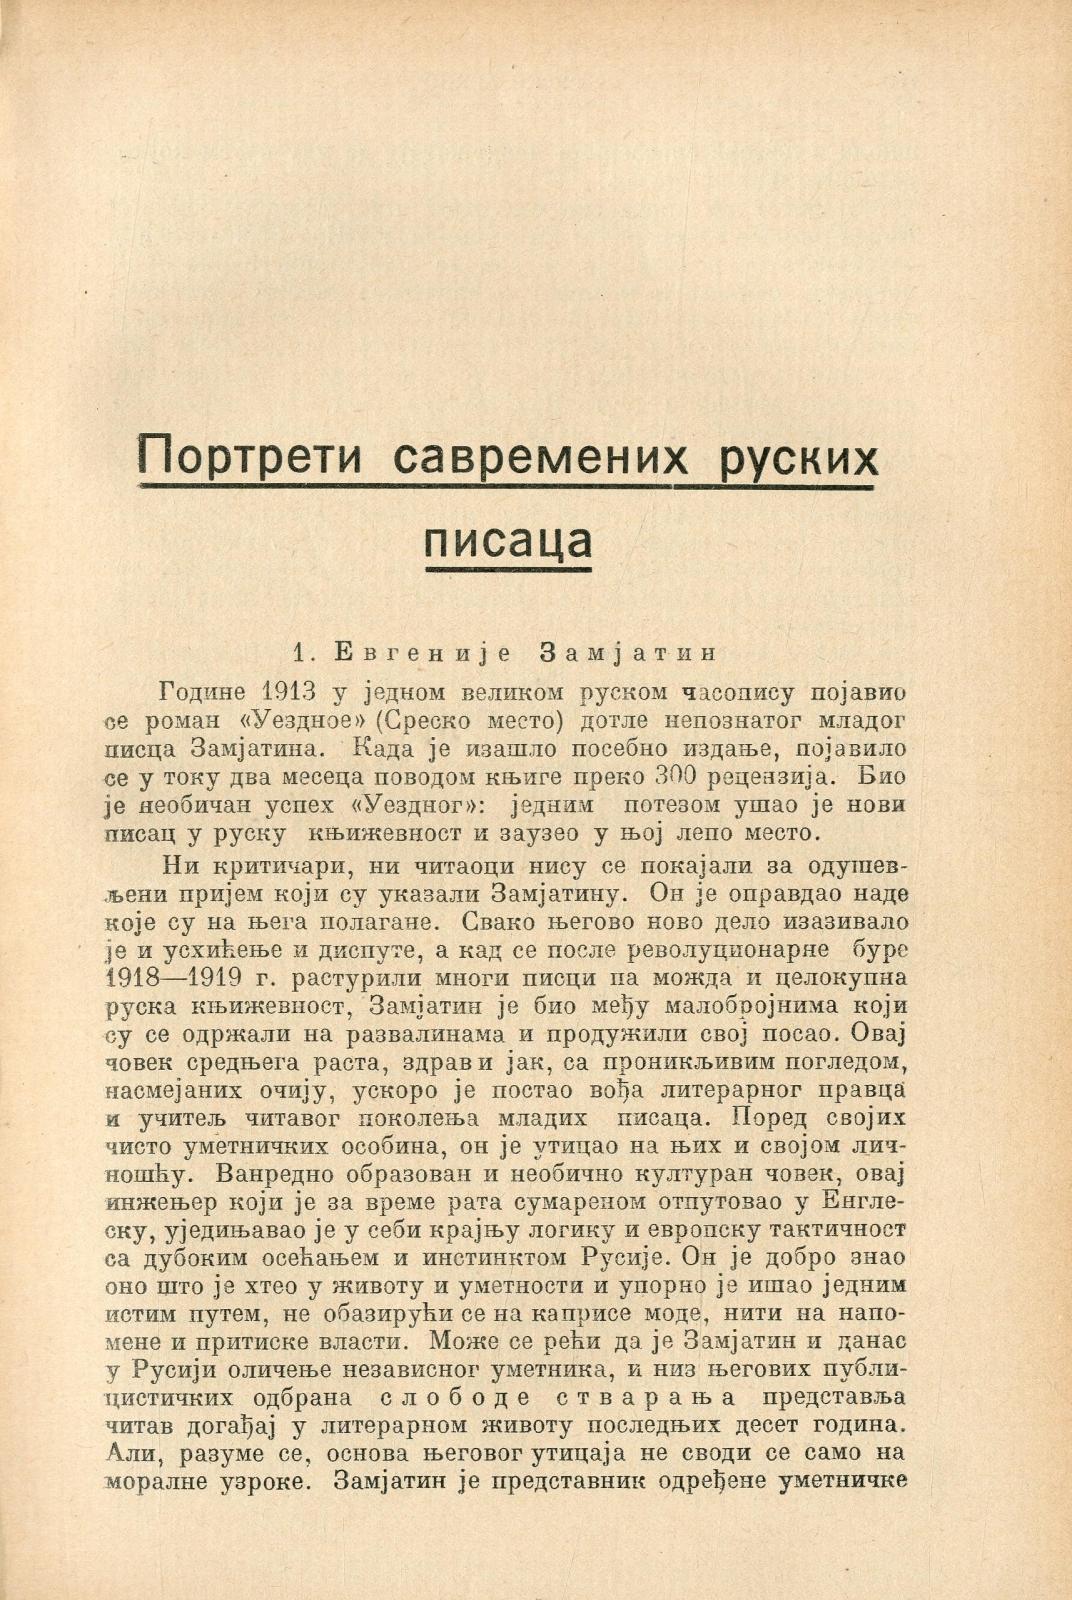 Руски архив : часопис за политику, културу и привреду Русије